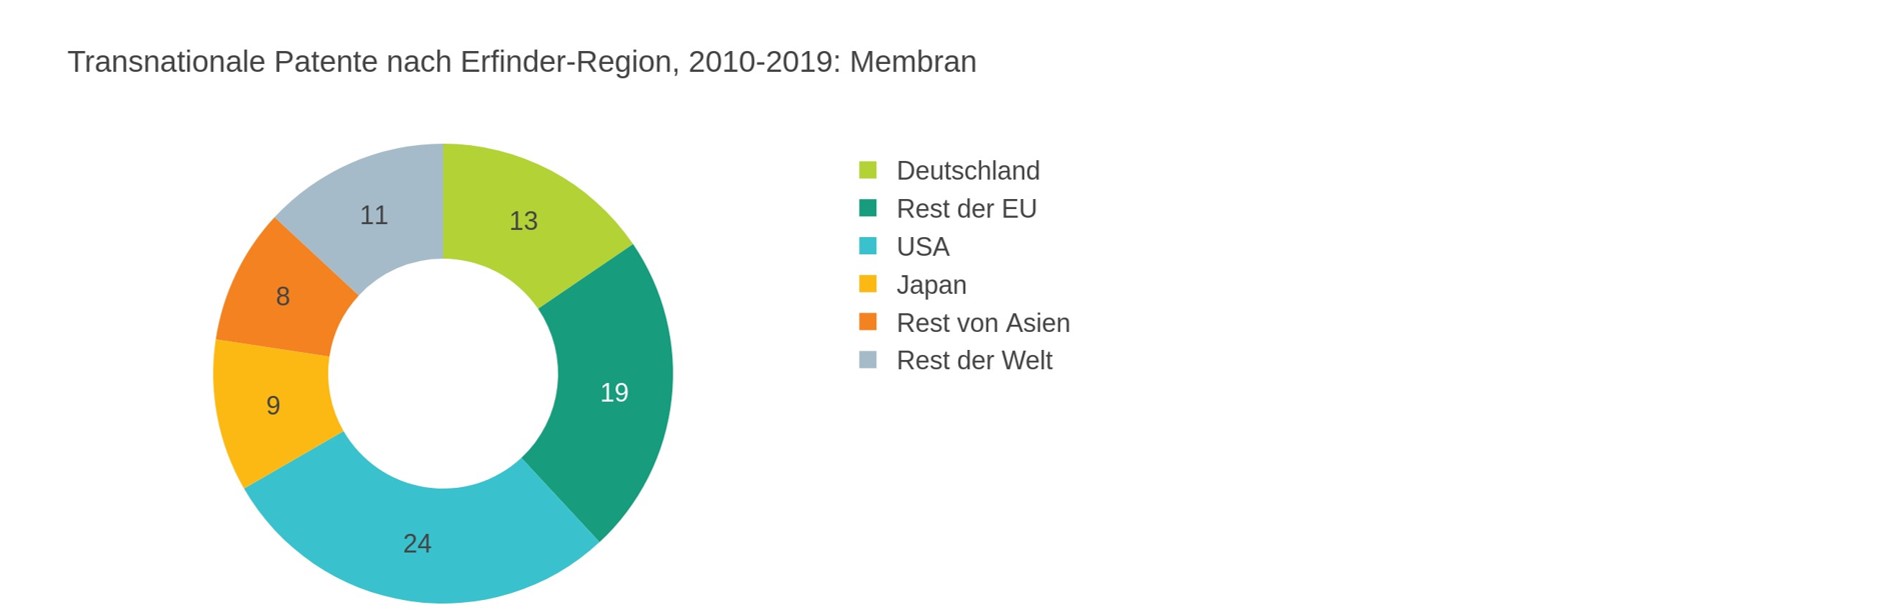 Abbildung 3: Verteilung der transnationalen Patente auf die Weltregionen für membranbasierte Elektrolyse (2010-2019).